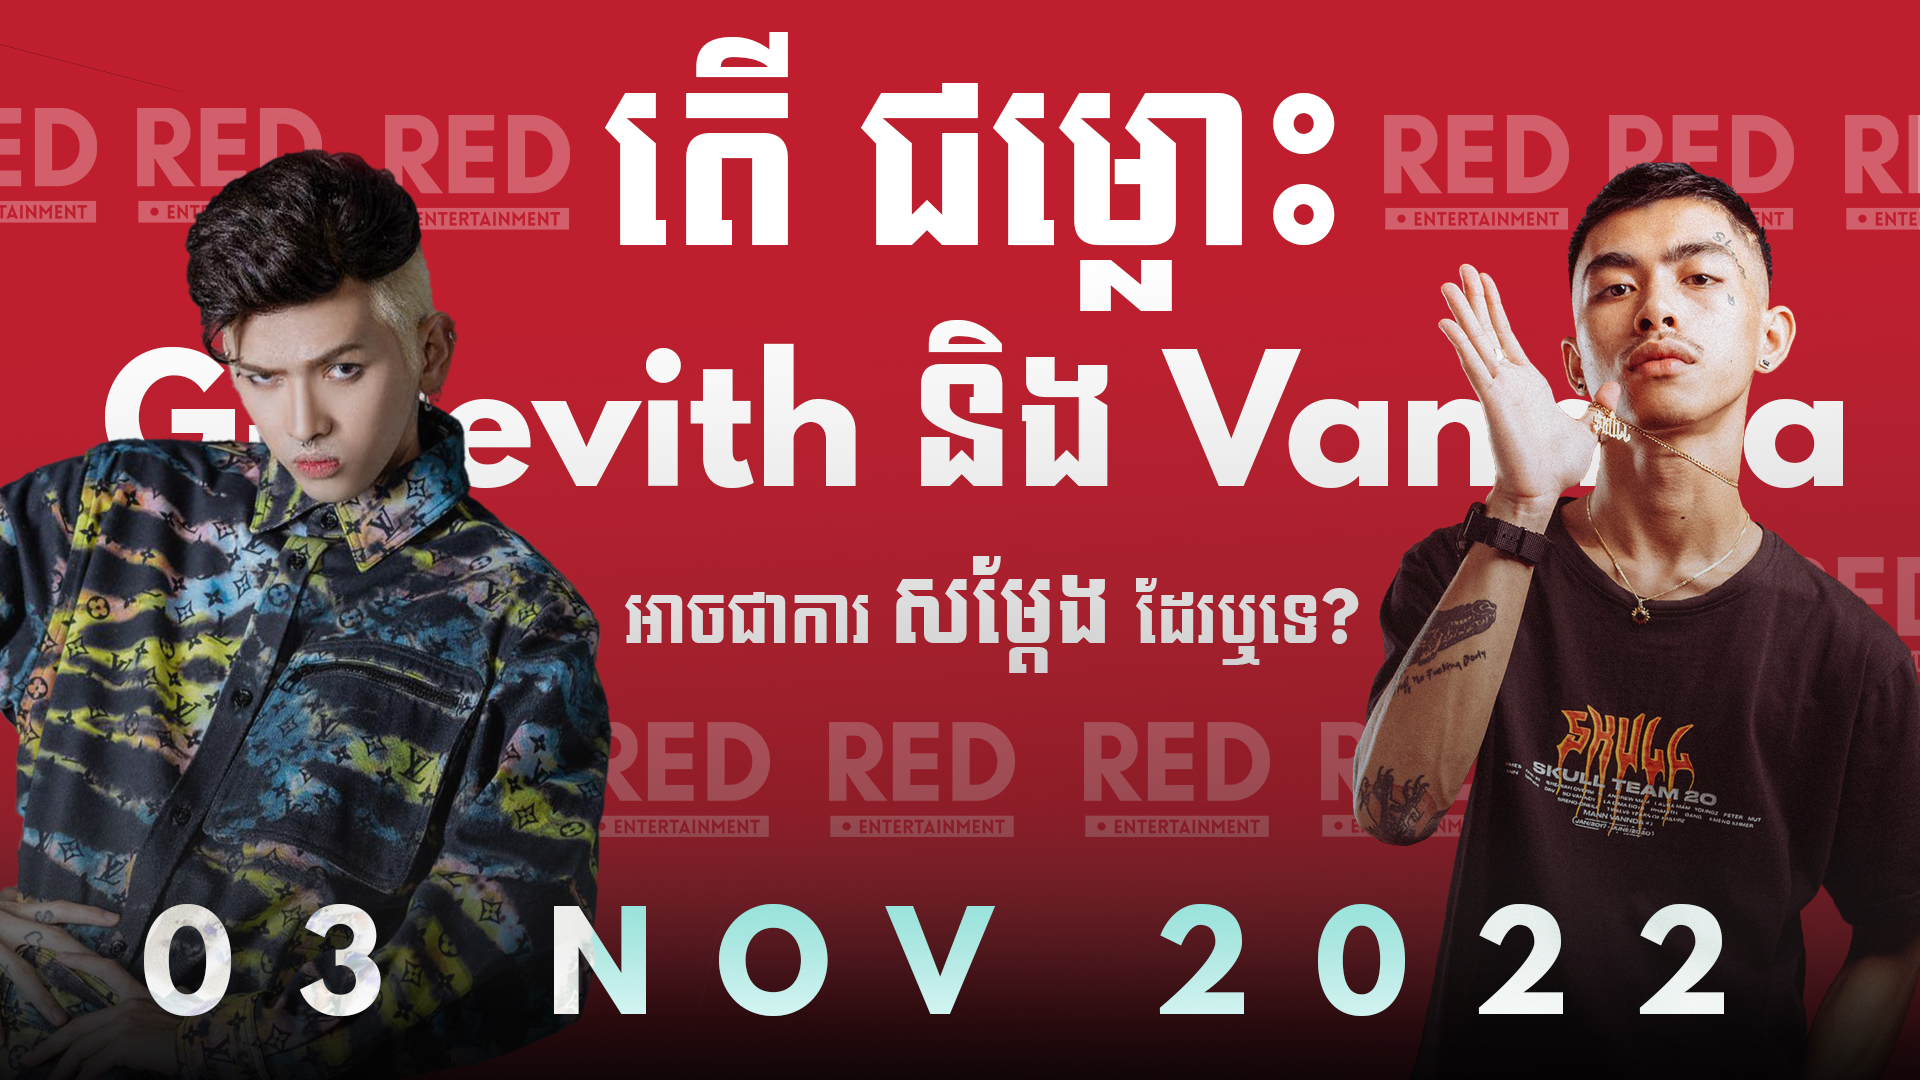 តើជម្លោះ G-Devith និង VannDa អាចជាការសម្តែងដែរឬទេ? (Trailer) | 03 NOVEMBER 2022